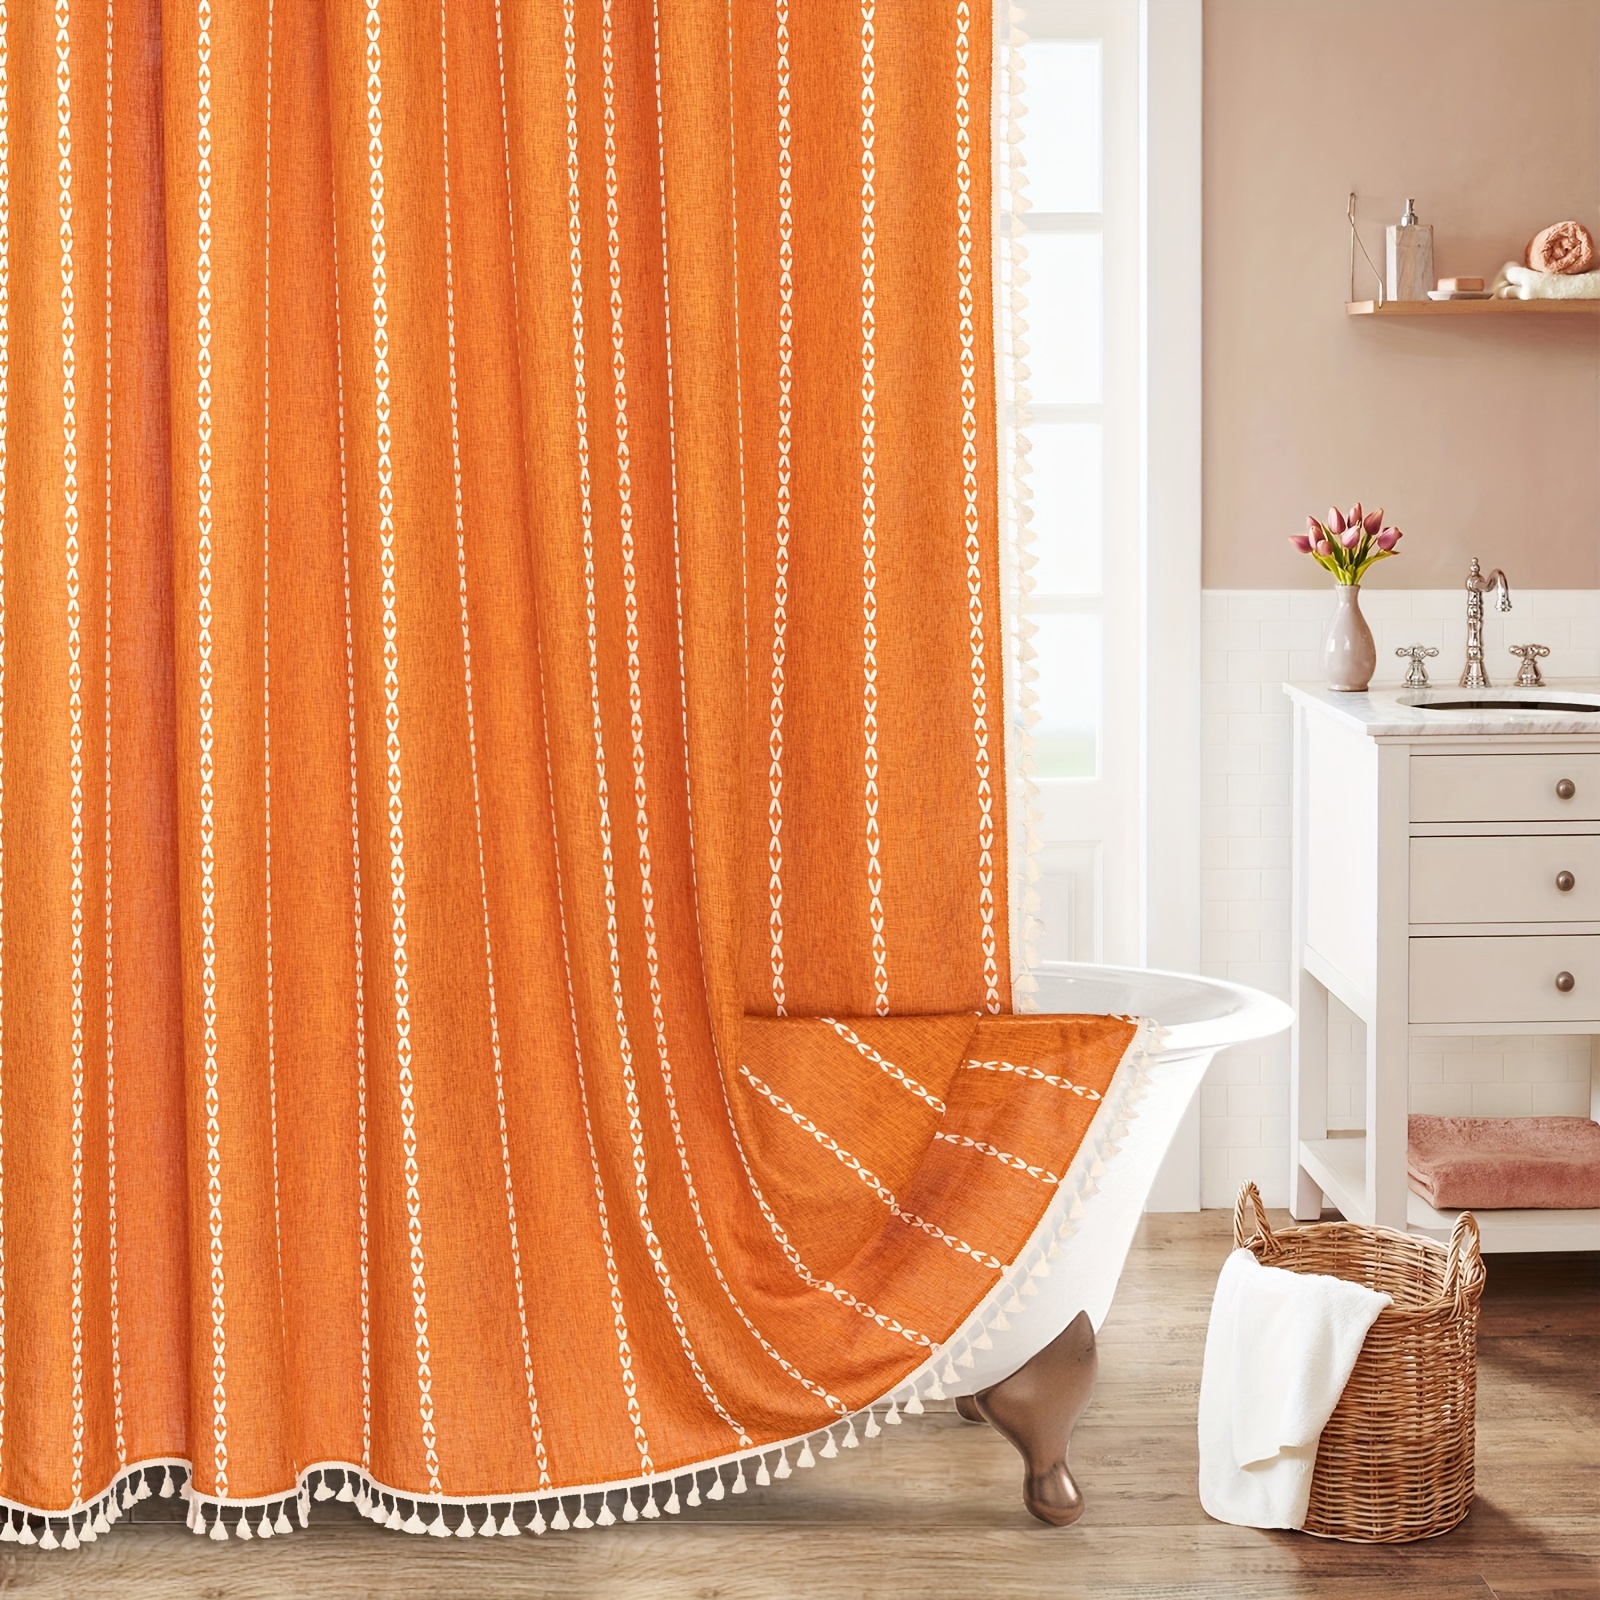 Arabesque Boho Pattern Shower Curtain Fabric Decor Set with Hooks